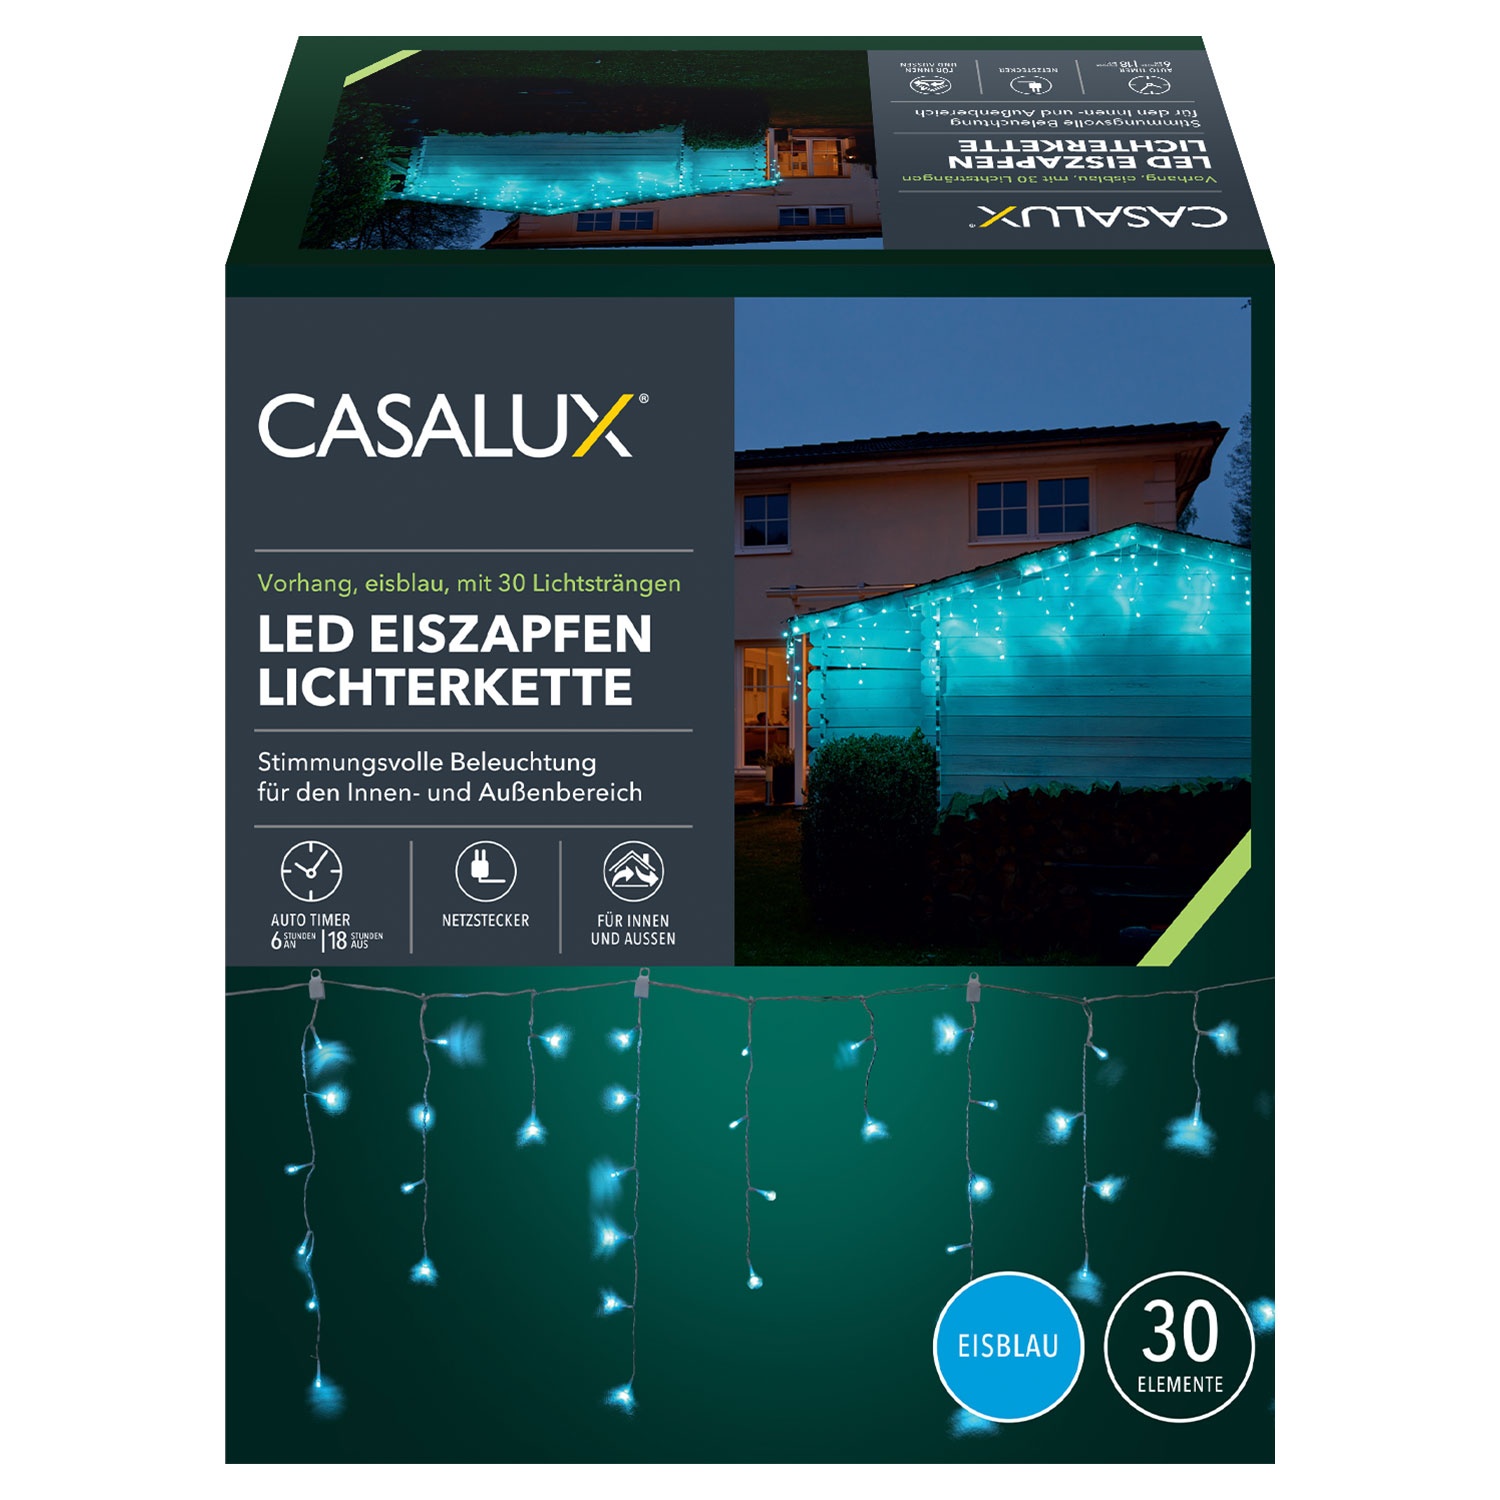 CASALUX LED-Eiszapfen-Lichterkette